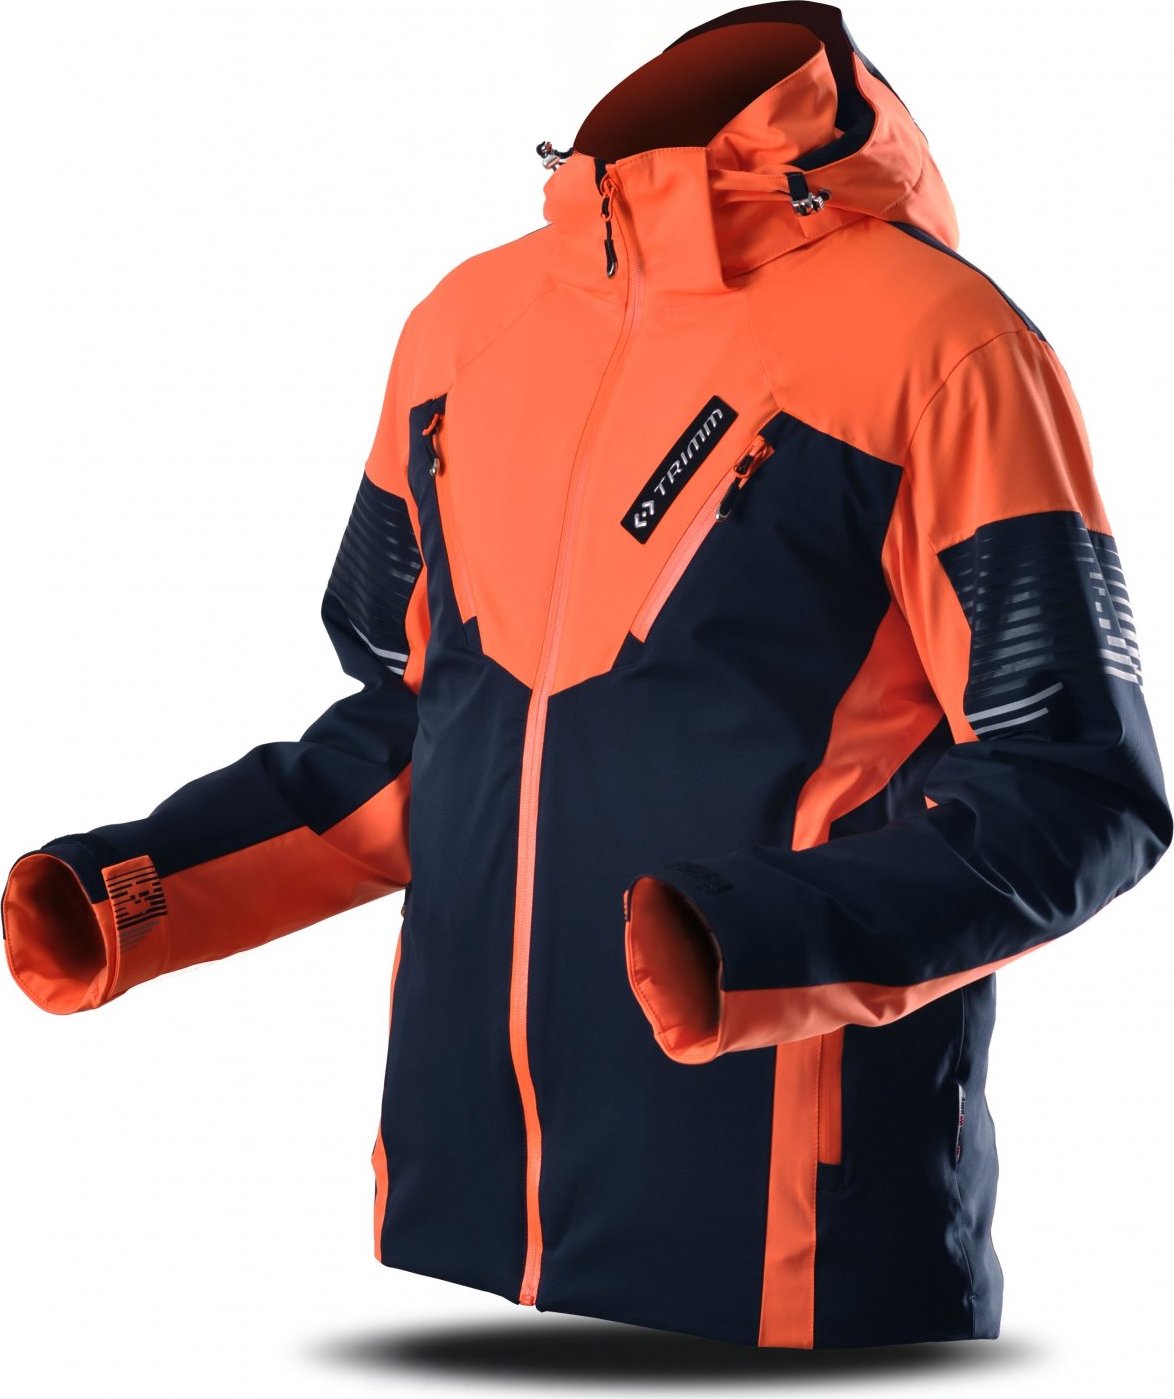 Pánská lyžařská bunda TRIMM Avalon dark blue/signal orange Velikost: XL, Barva: dark blue/signal orange